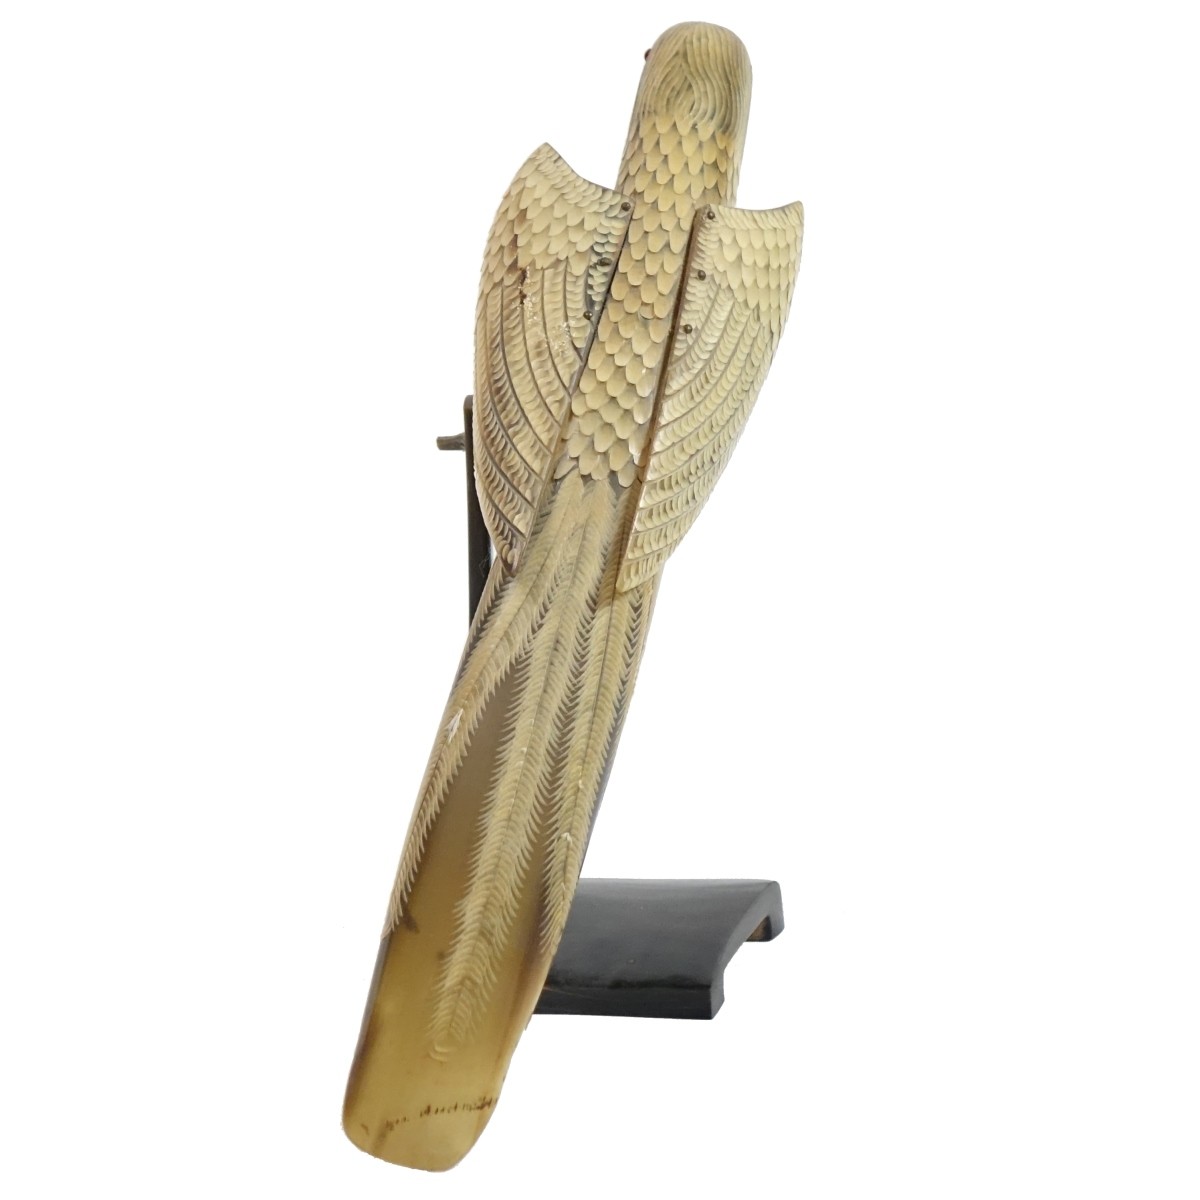 Vintage Hand Carved Horn Model of a Parrot